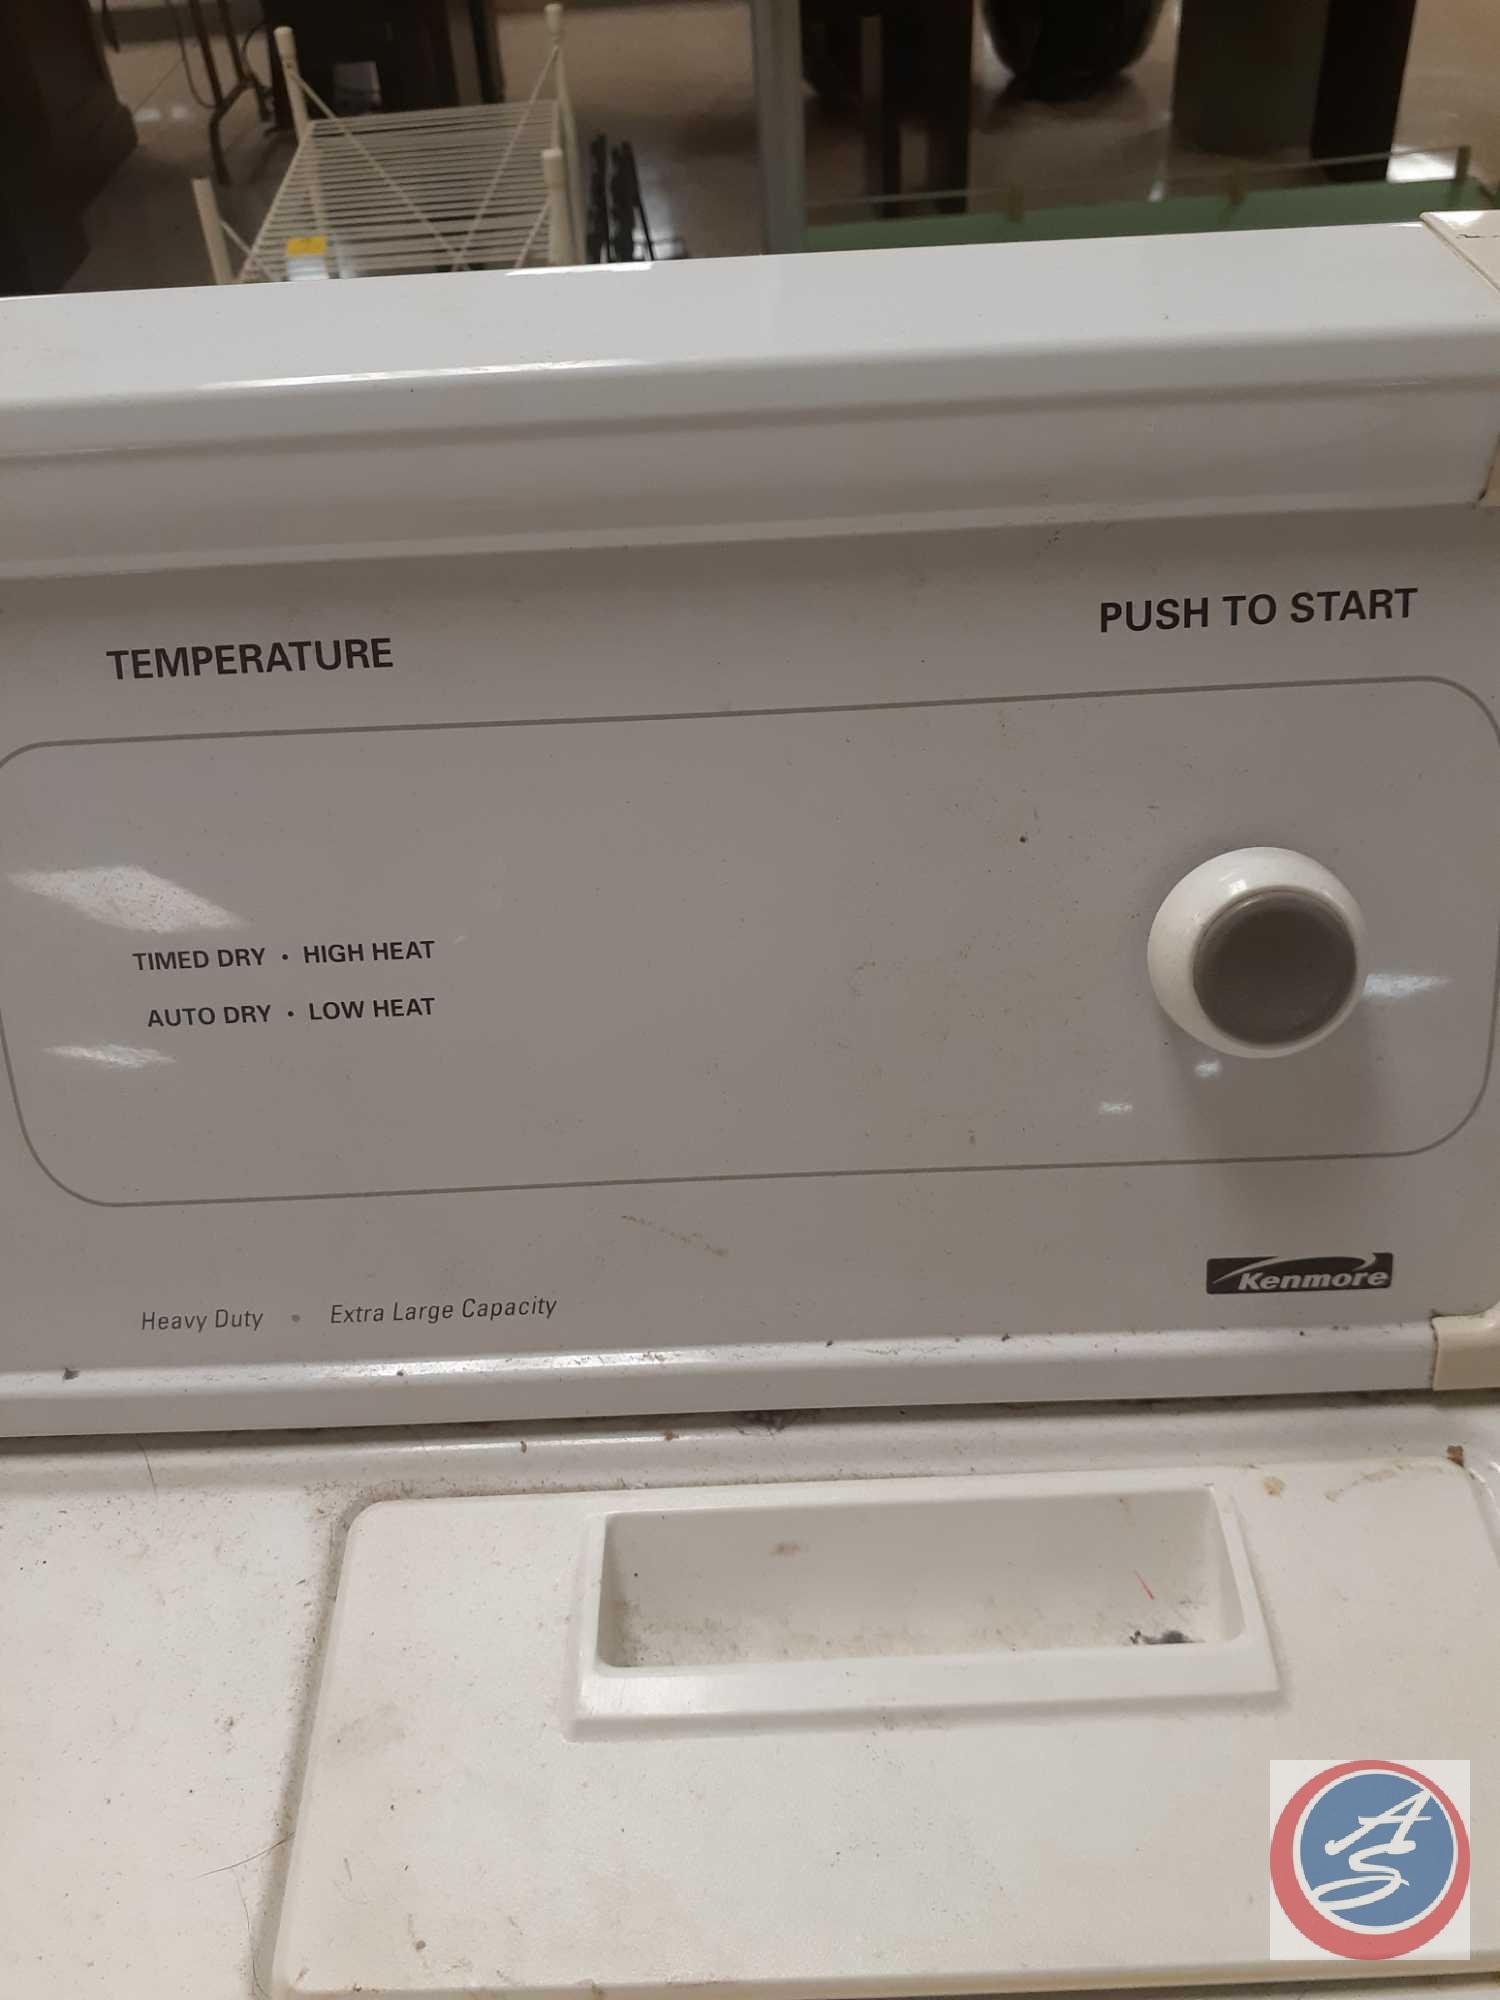 Kenmore Dryer Model No. 110.62202101